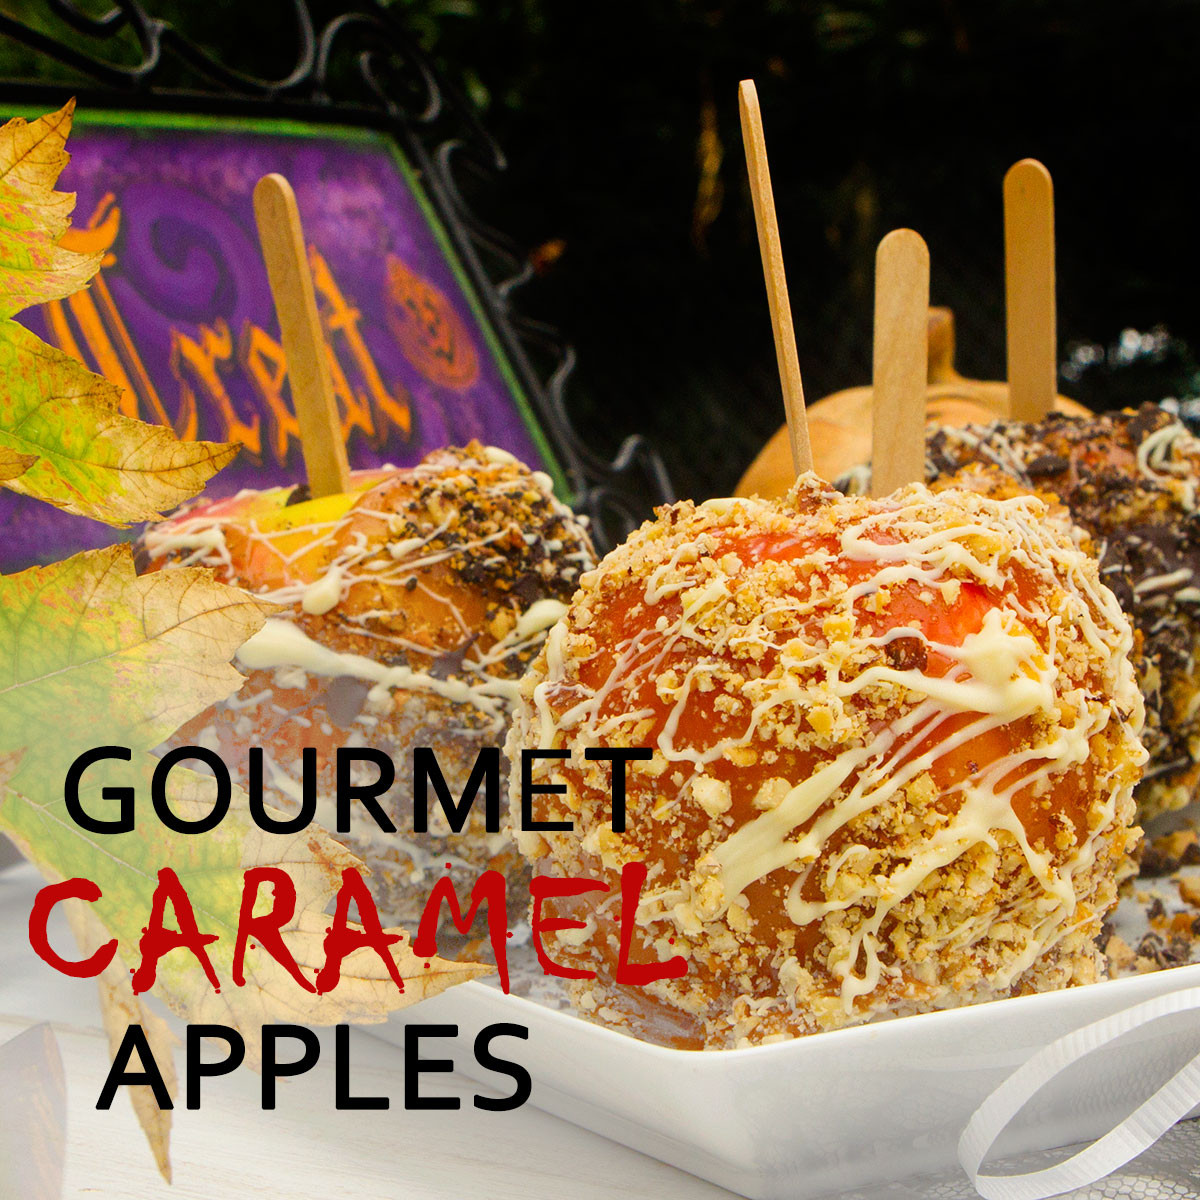 Gourmet Carmel Apple Recipes
 Gourmet Caramel Apples Recipe